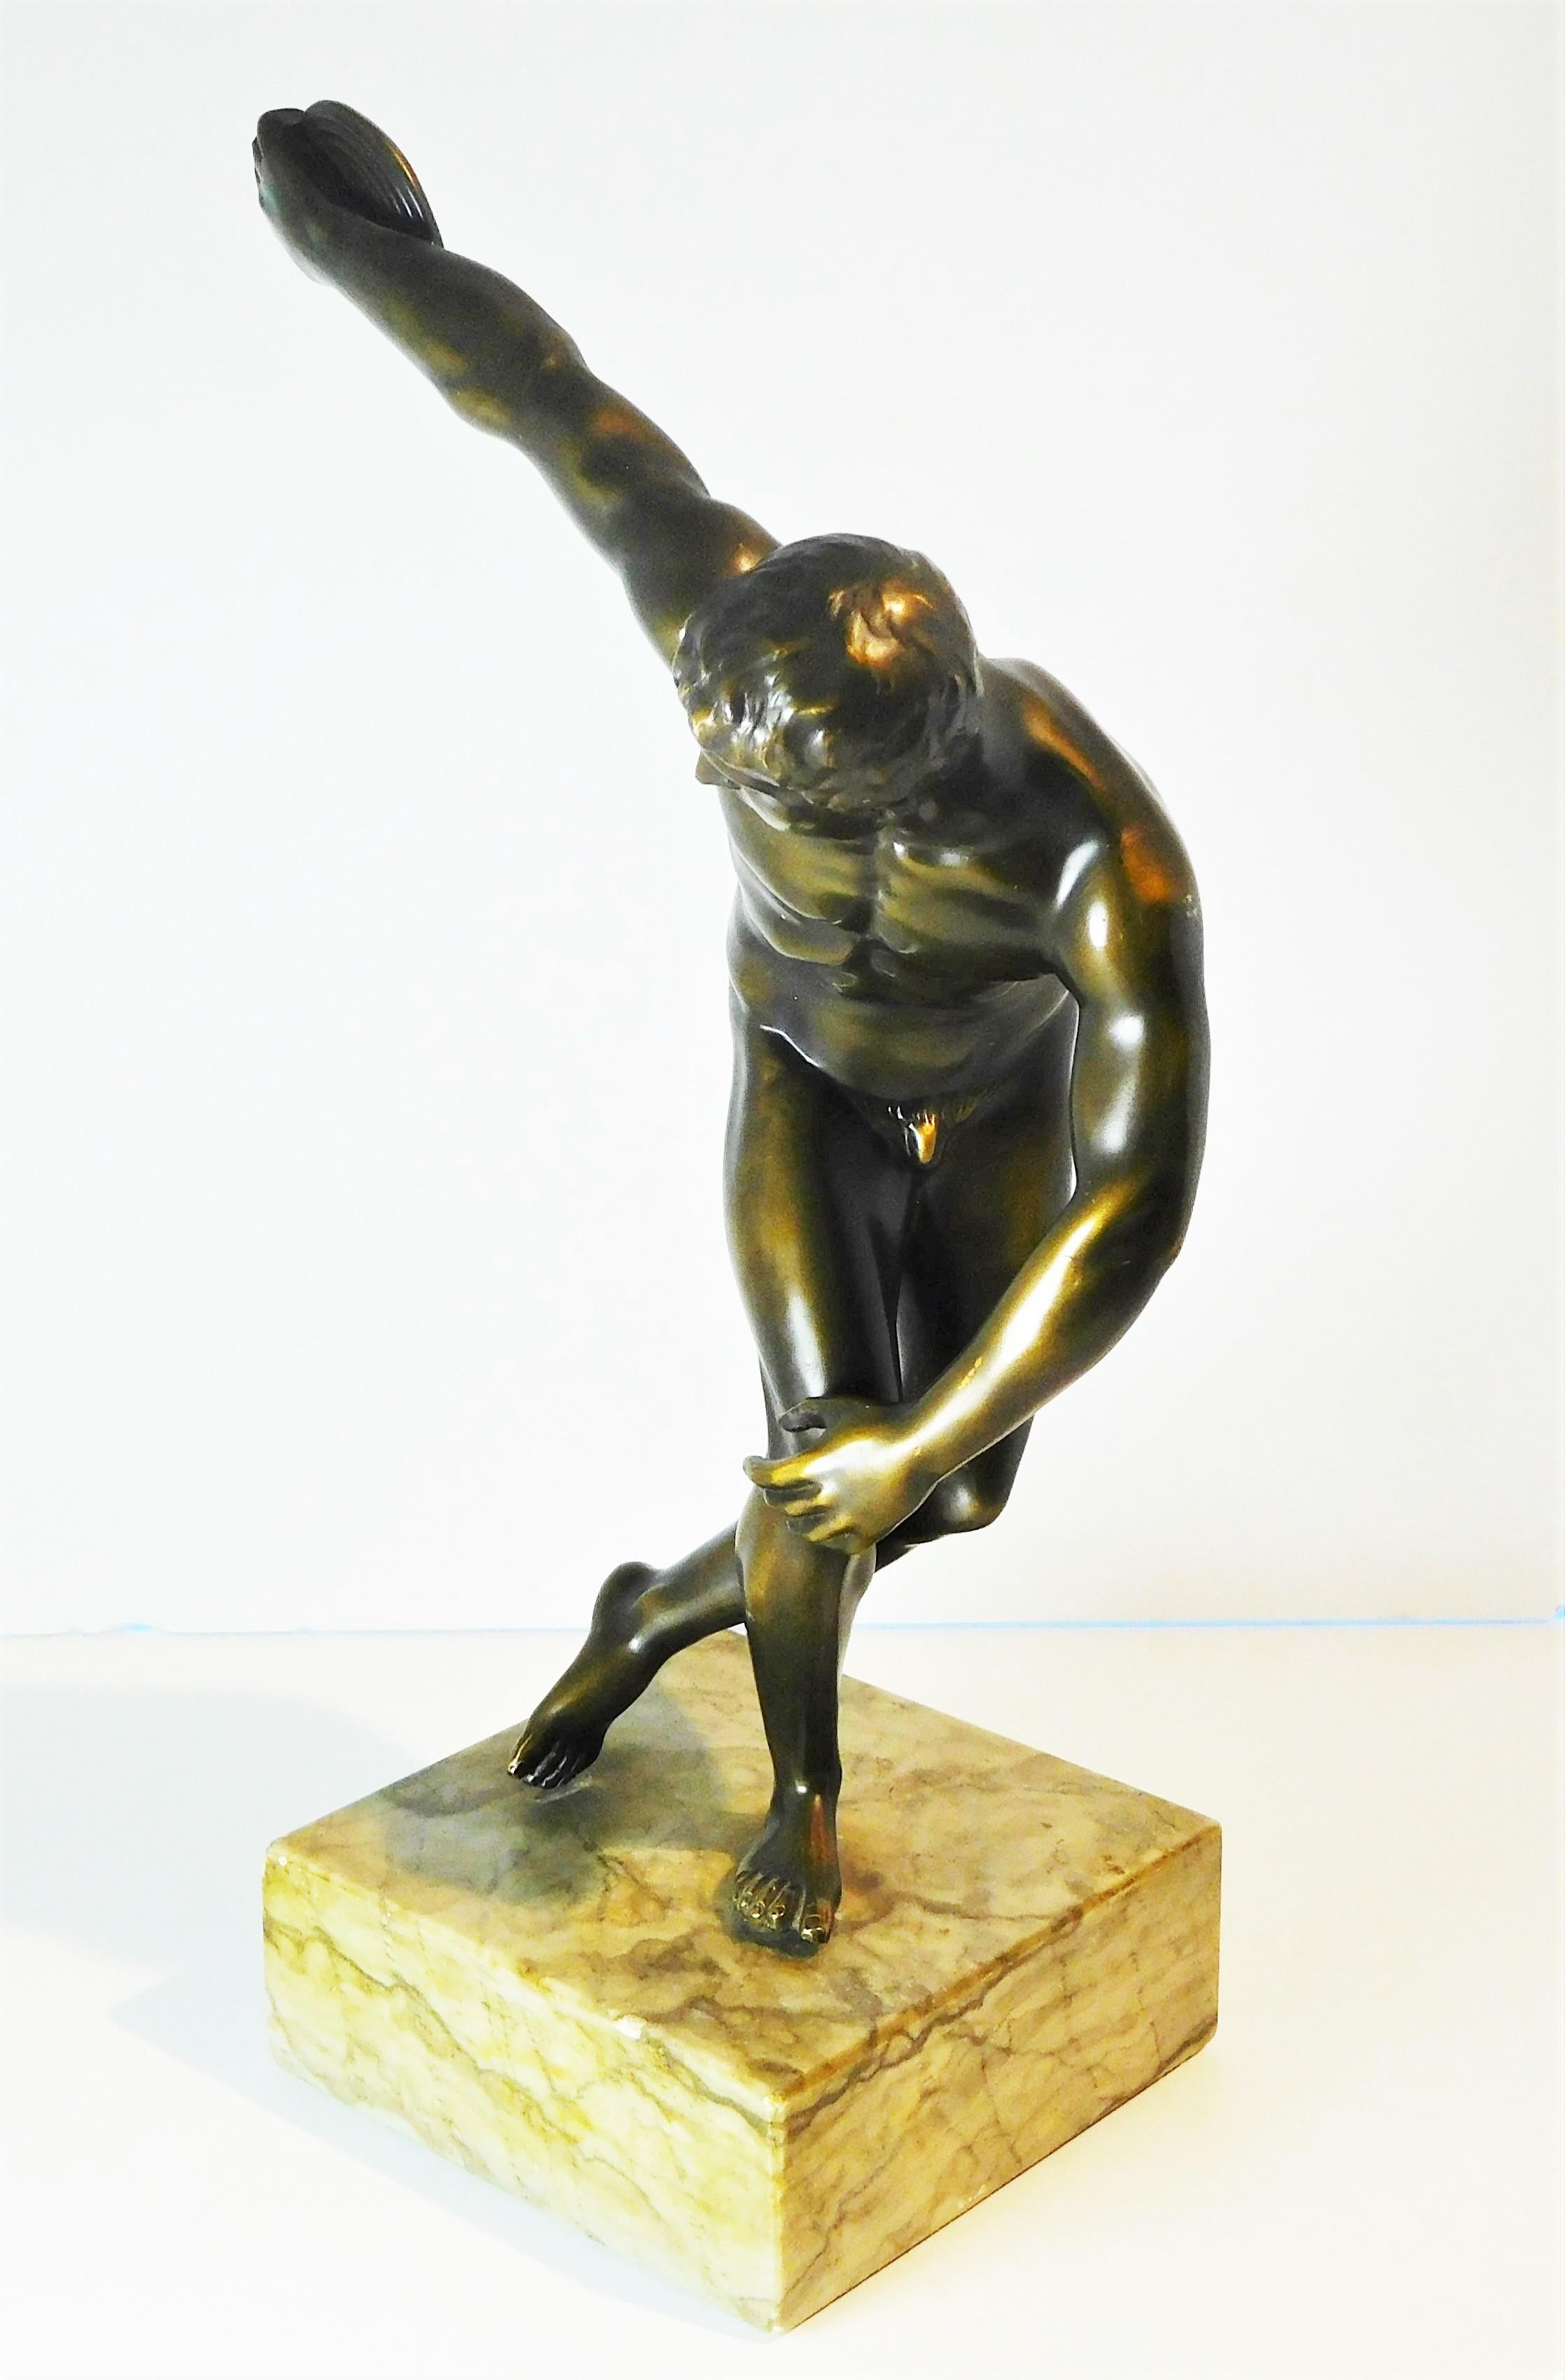 Grand Tour Souvenir Bronze Figure of Discobolus, After the Antique by Myron For Sale 2